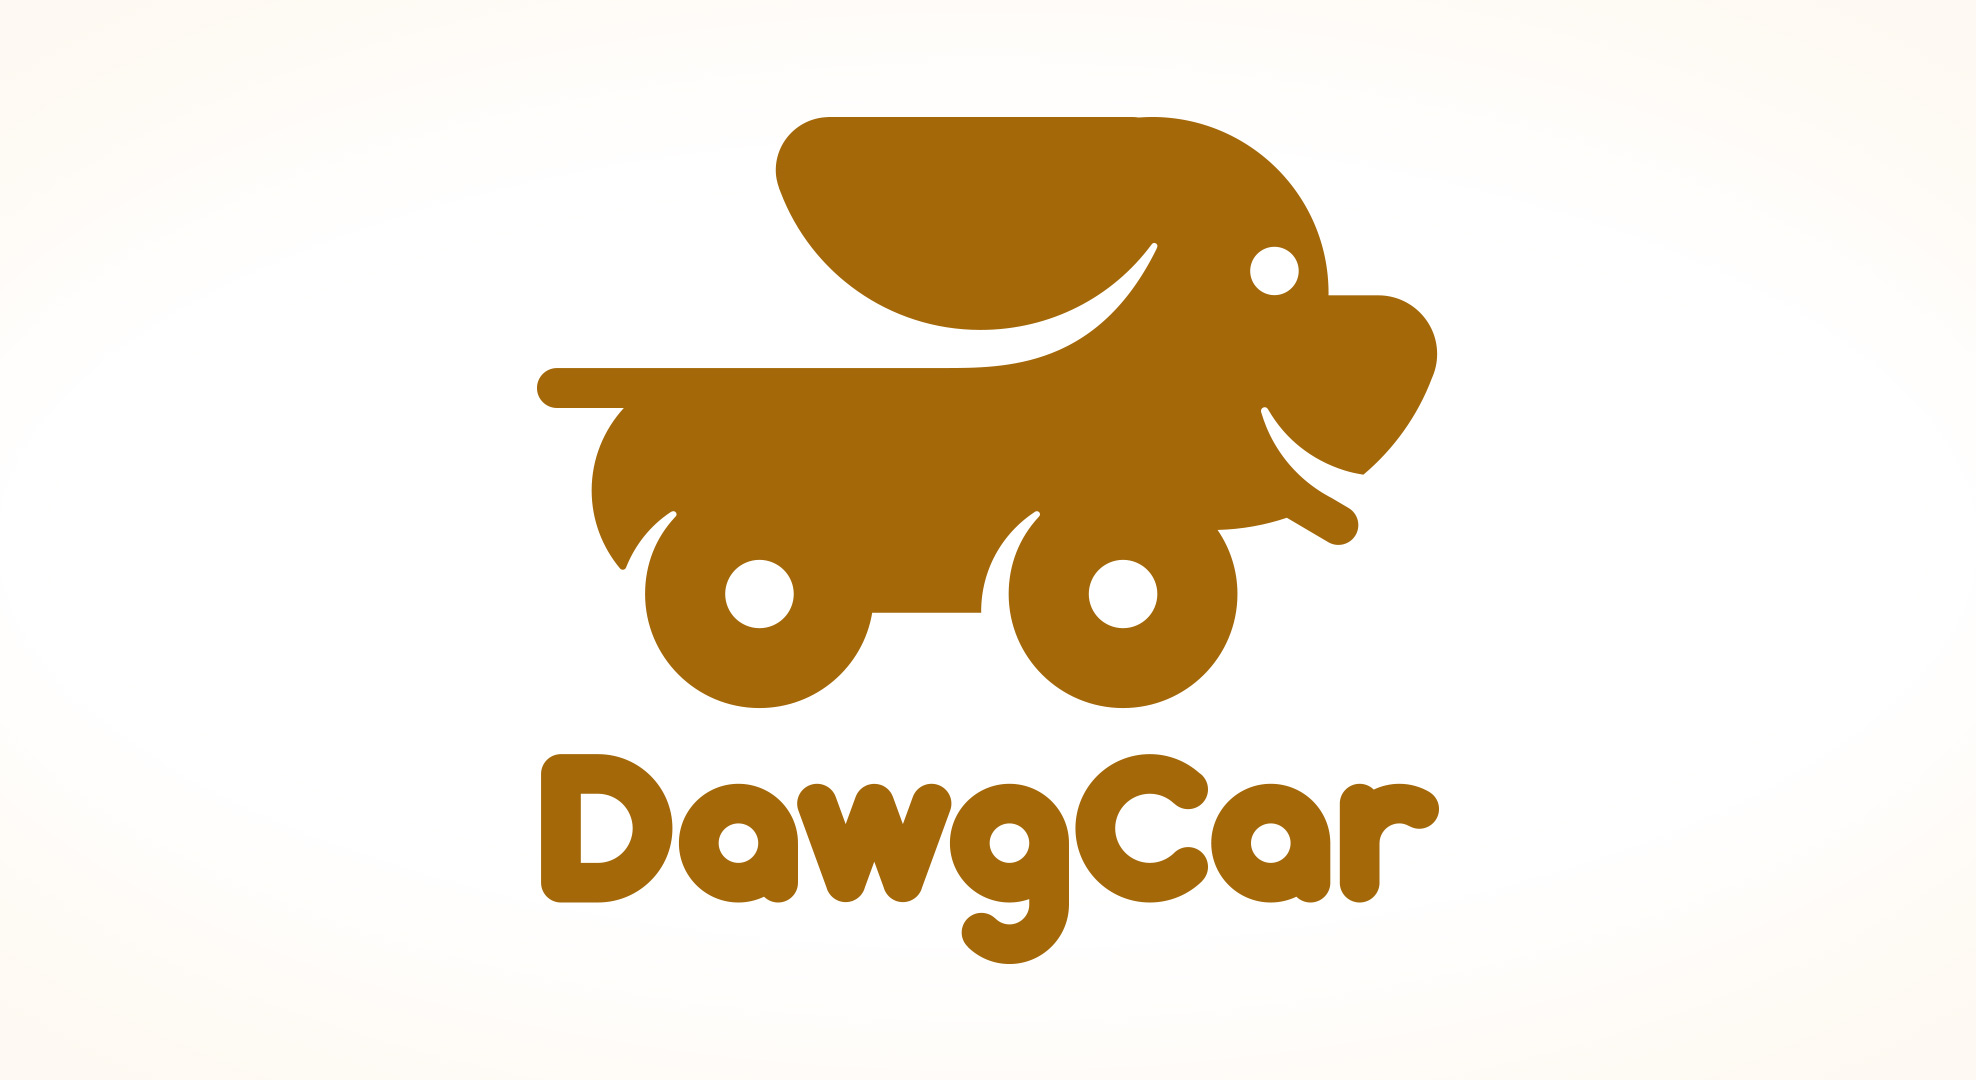 DawgCar